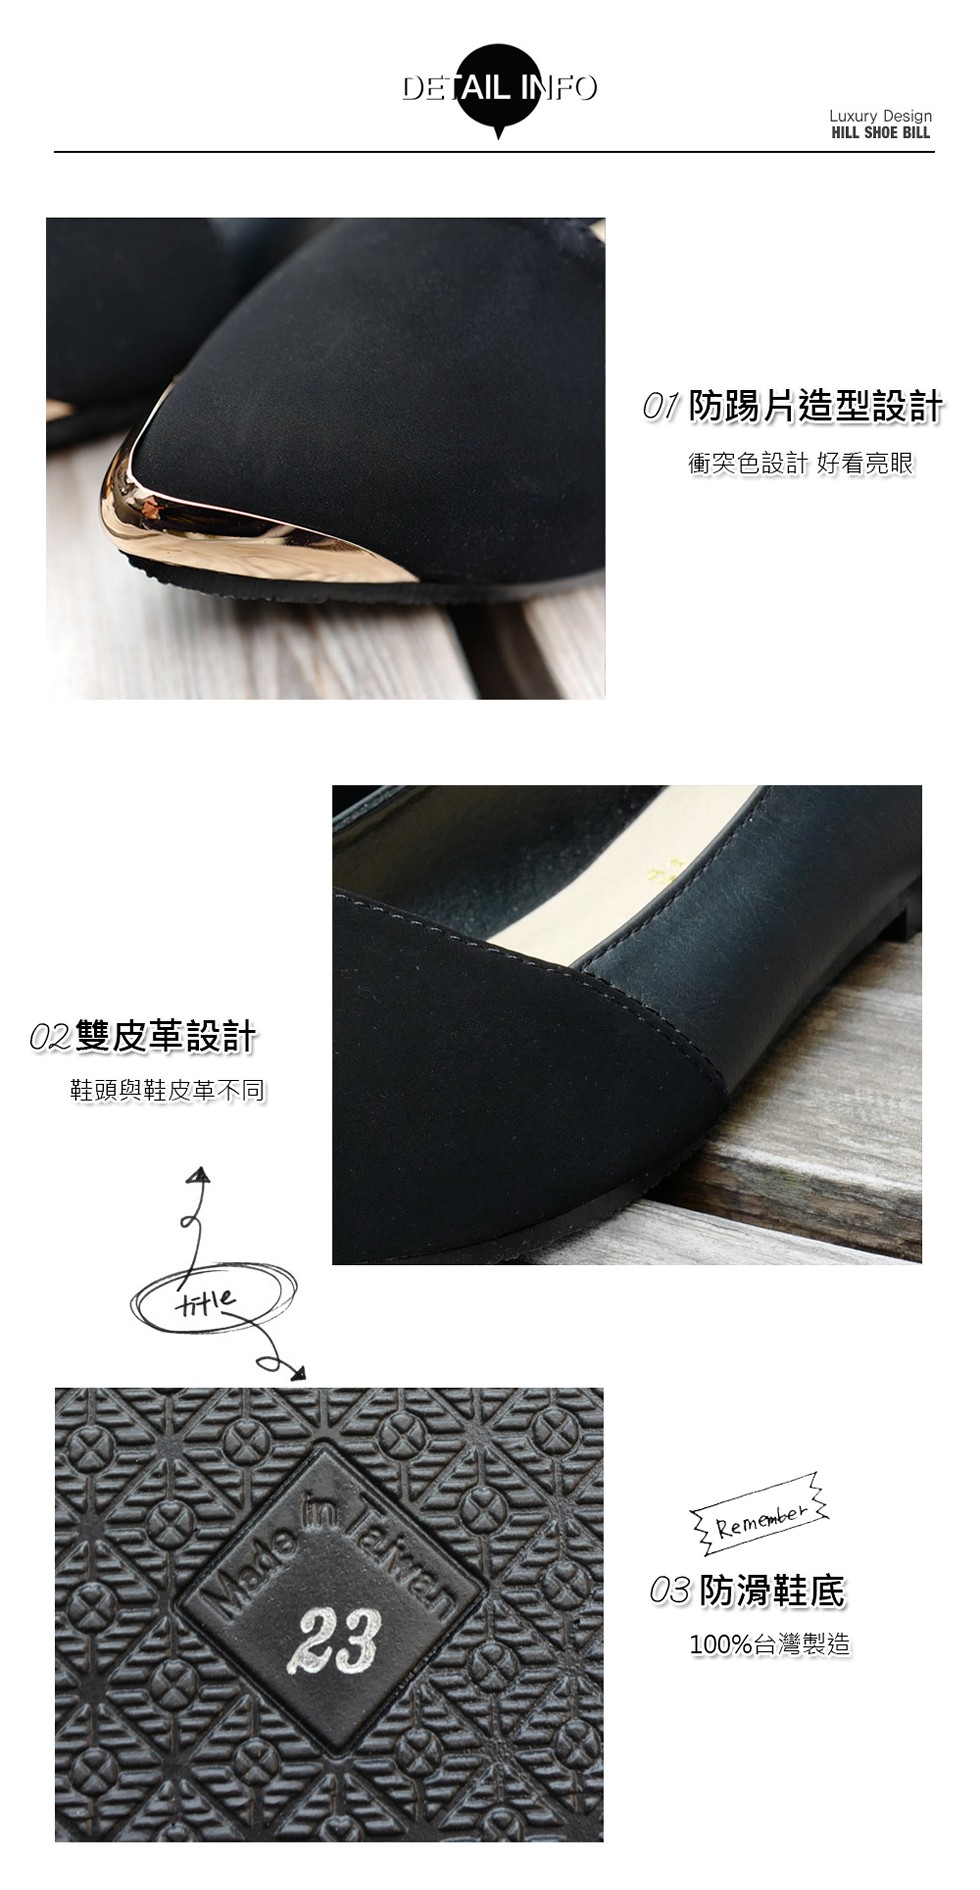 01 防踢片造型設計，衝突色設計好，02雙皮革設計，鞋頭與鞋皮革不同，03防滑鞋底，100%台灣製造。